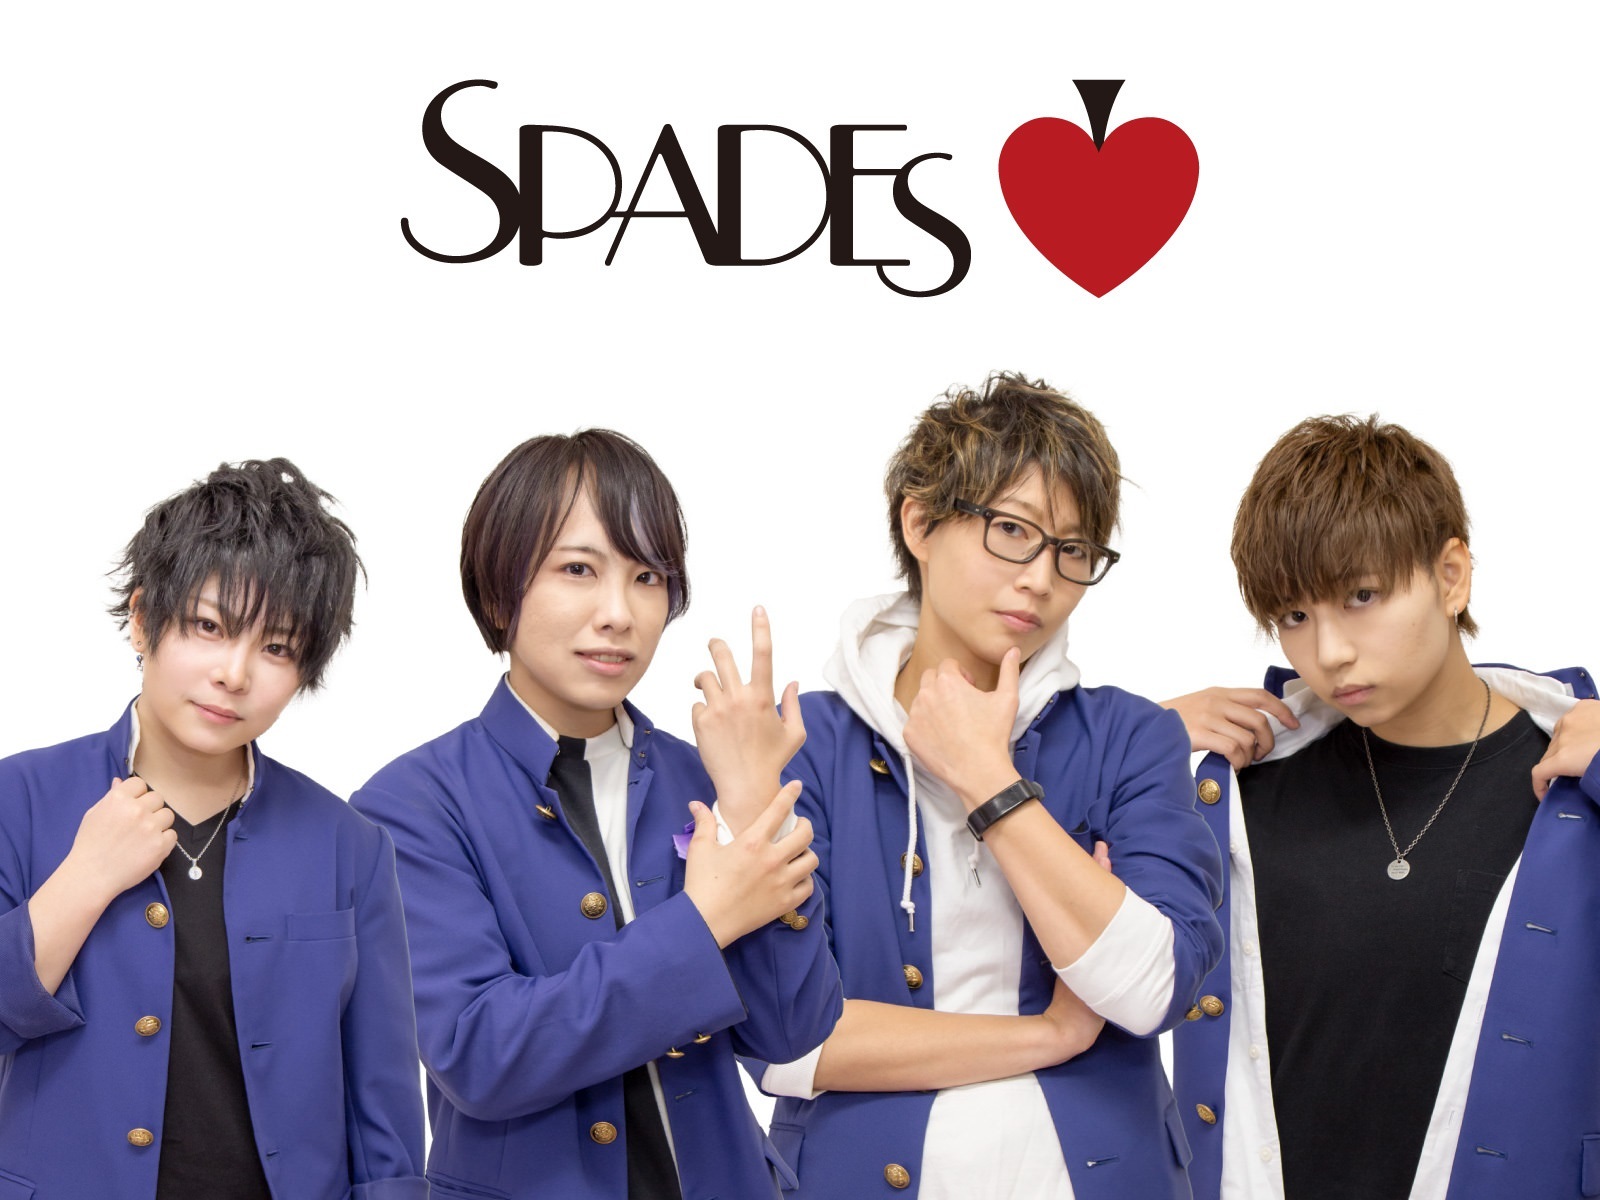 名古屋を拠点に活動する男装アイドルグループ
「SPADES」(スペーズ)が新メンバーの募集を開始！